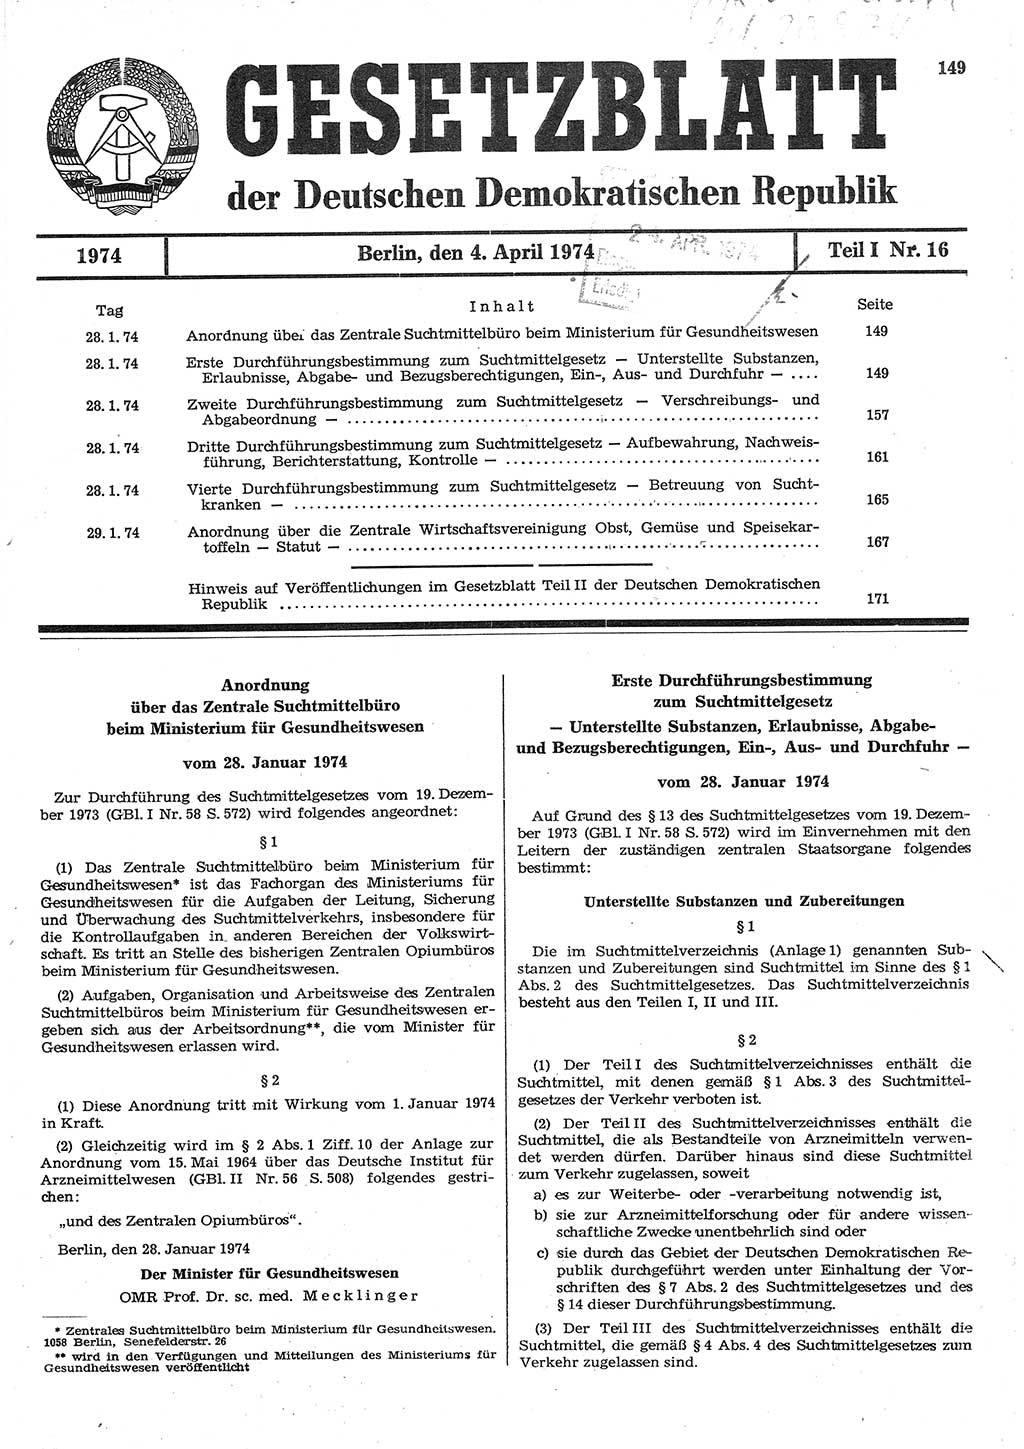 Gesetzblatt (GBl.) der Deutschen Demokratischen Republik (DDR) Teil Ⅰ 1974, Seite 149 (GBl. DDR Ⅰ 1974, S. 149)